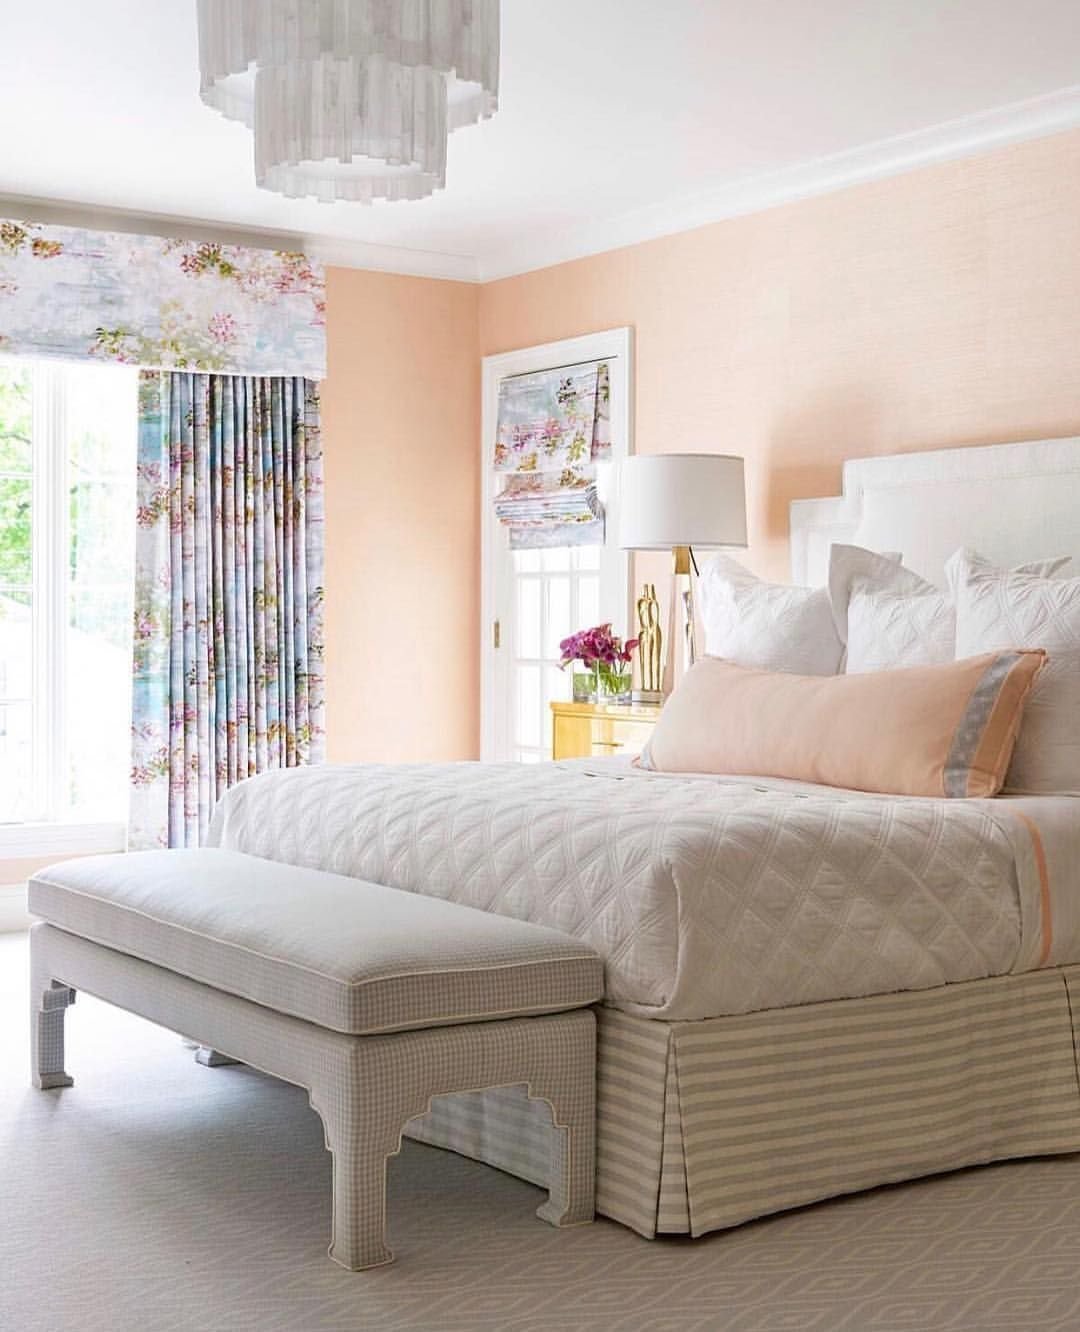 Спальня в персиковом цвете